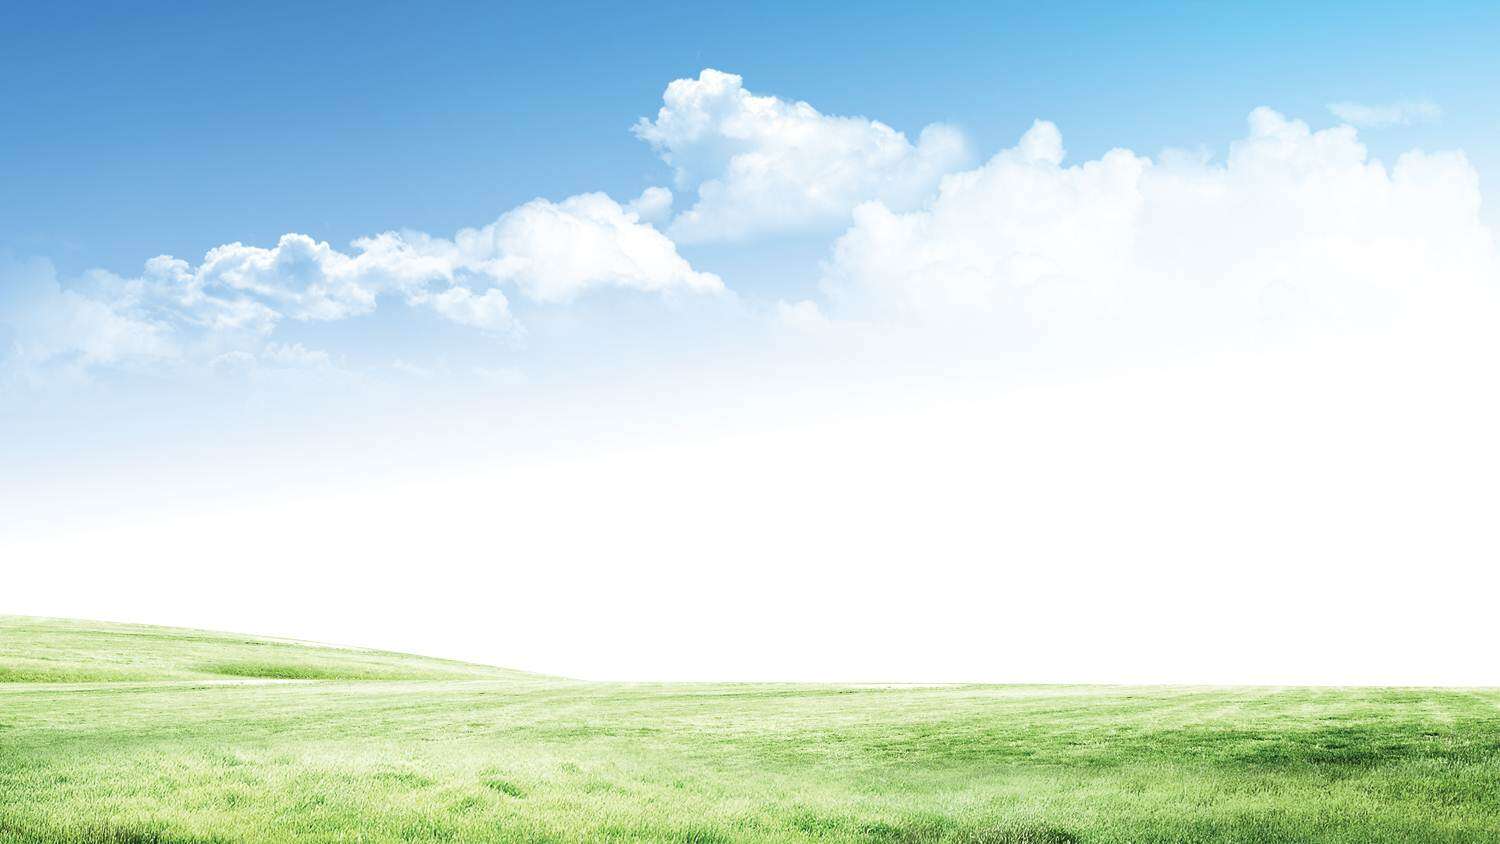 清新自然的蓝天白云草地PPT背景图片